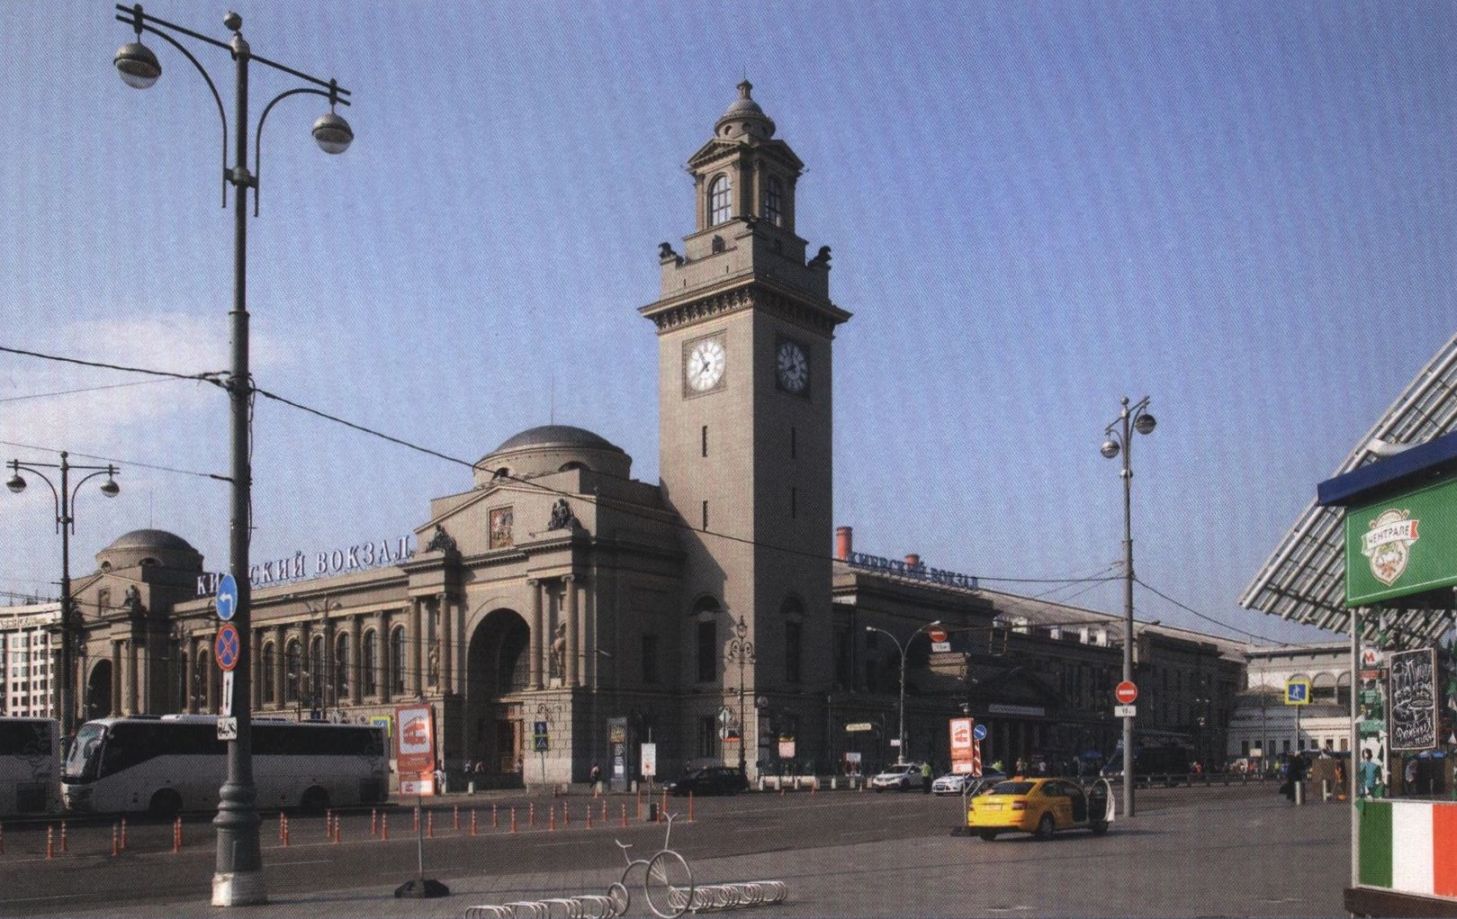 Площадь Киевского вокзала, дом 1. 2016 г. В 1934 году Брянский вокзал был переименован в Киевский. В 1940—1946 годах с северной стороны был пристроен корпус с кассовым залом и станцией метро «Киевская», архитектор Д.Н. Чечулин